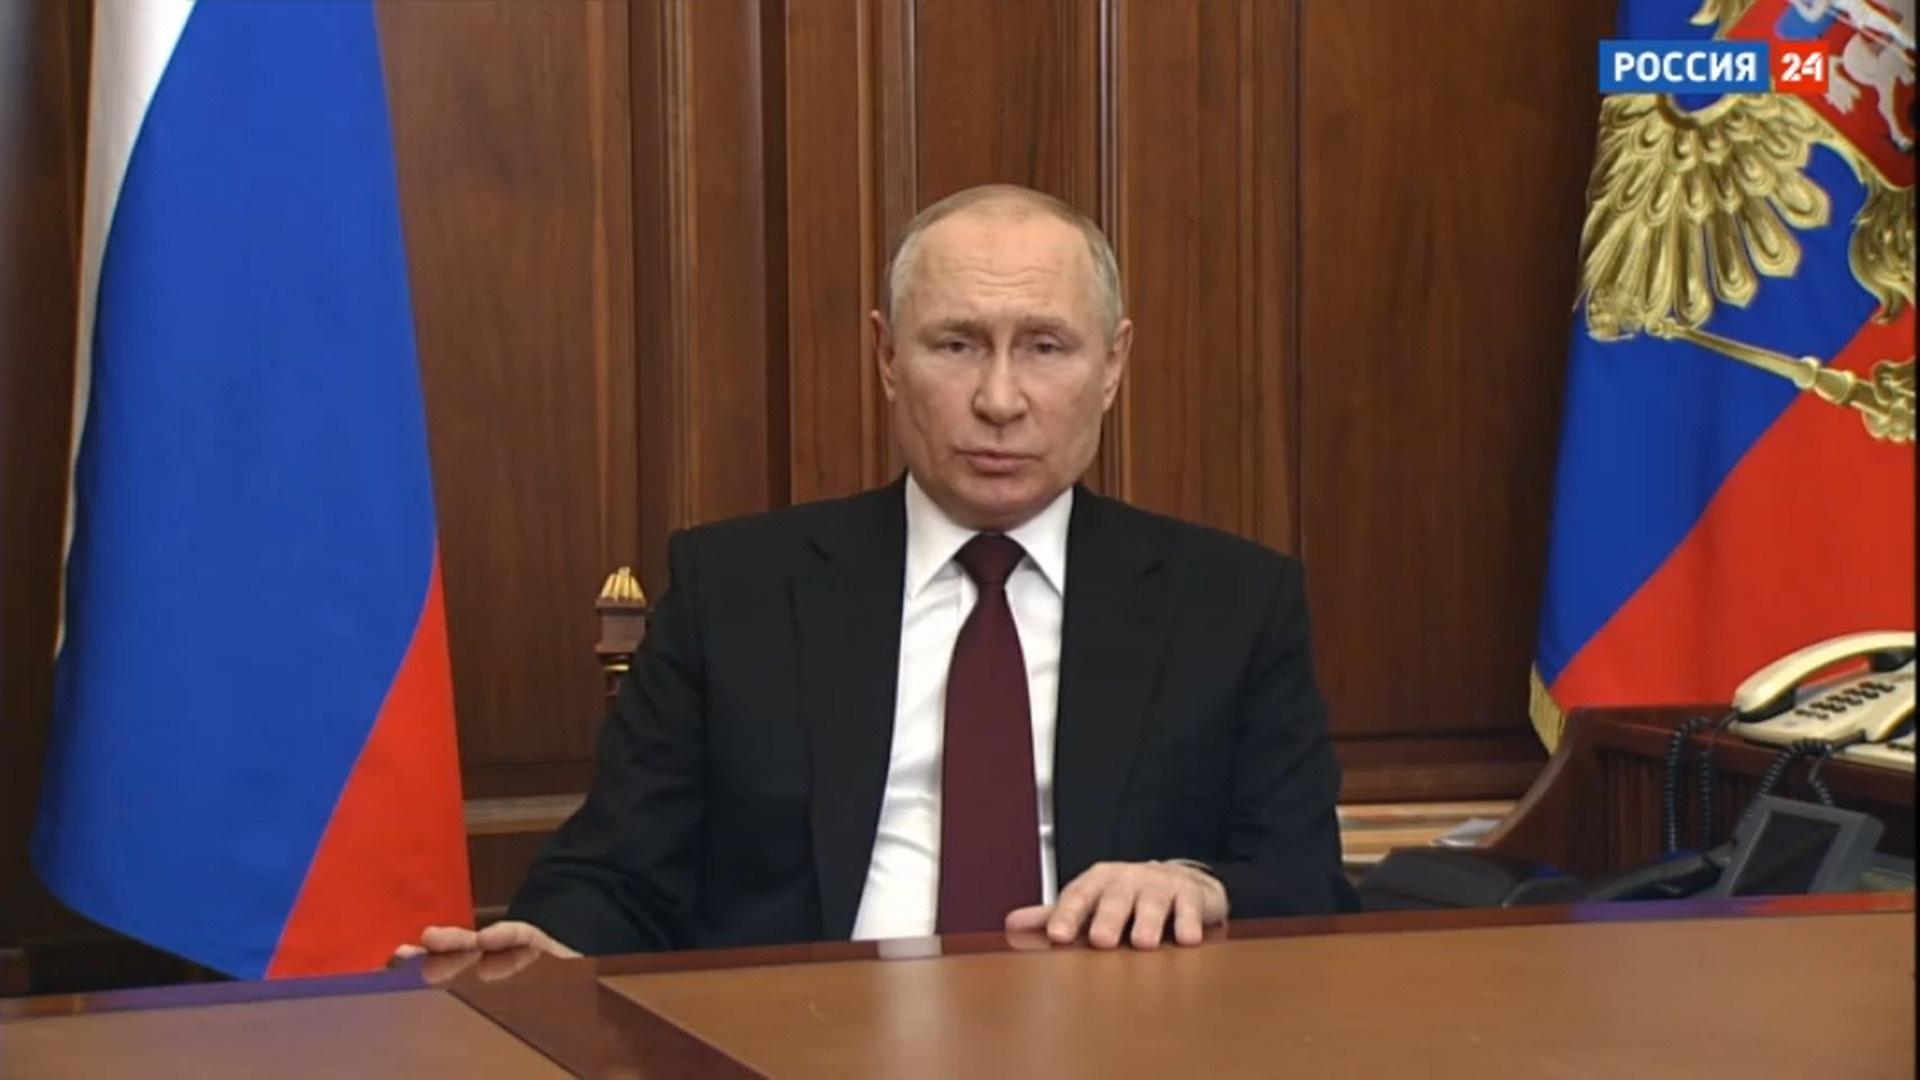 Обращение Владимира Путина к россиянам 21 февраля 2022 года - 21 февраля  2022 - Фонтанка.Ру